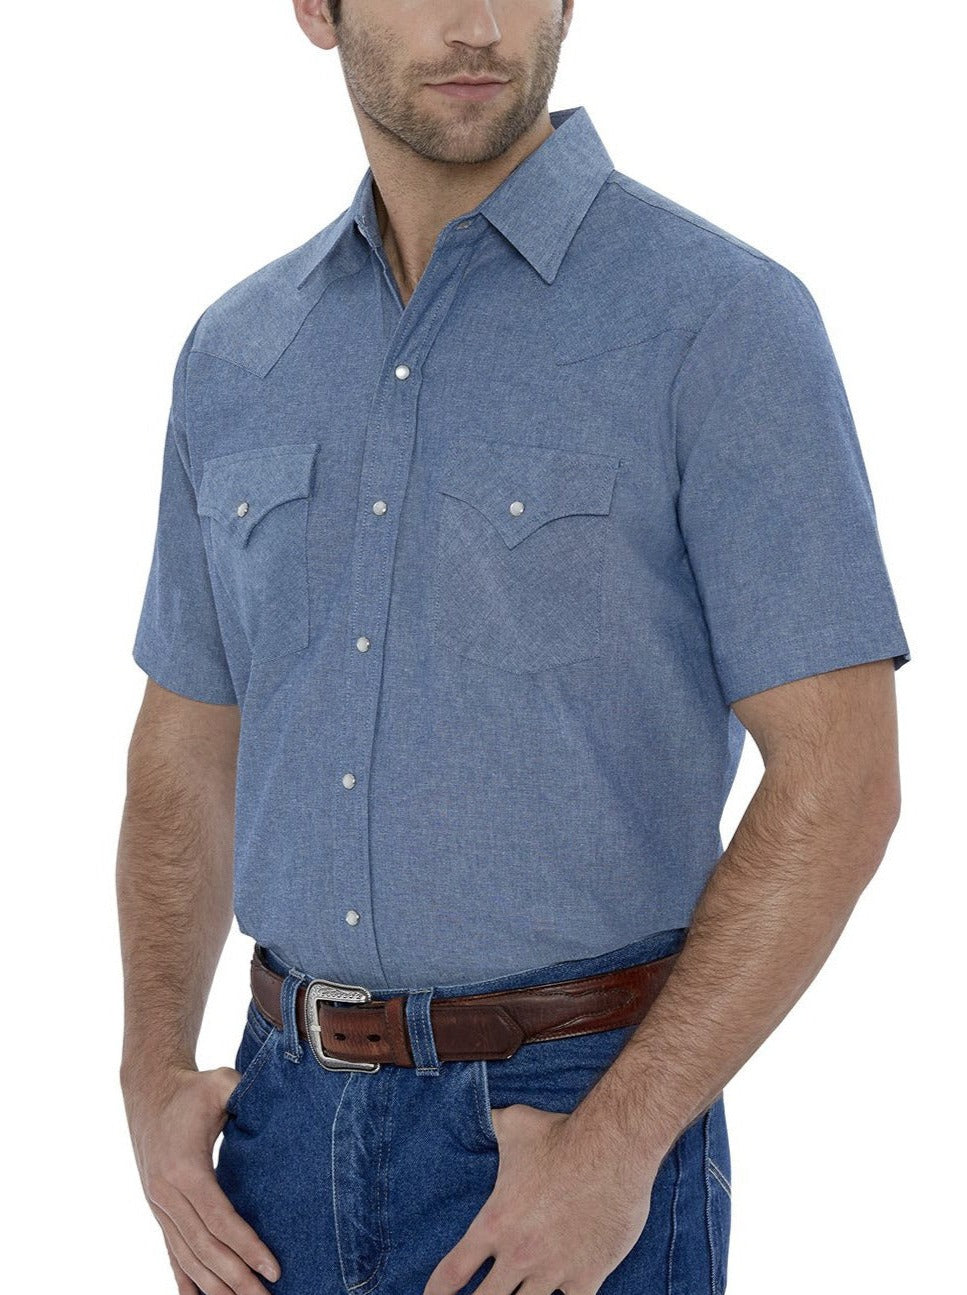 Ely Cattleman Men's Short Sleeve Chambray Work Shirt, Blue, XXL